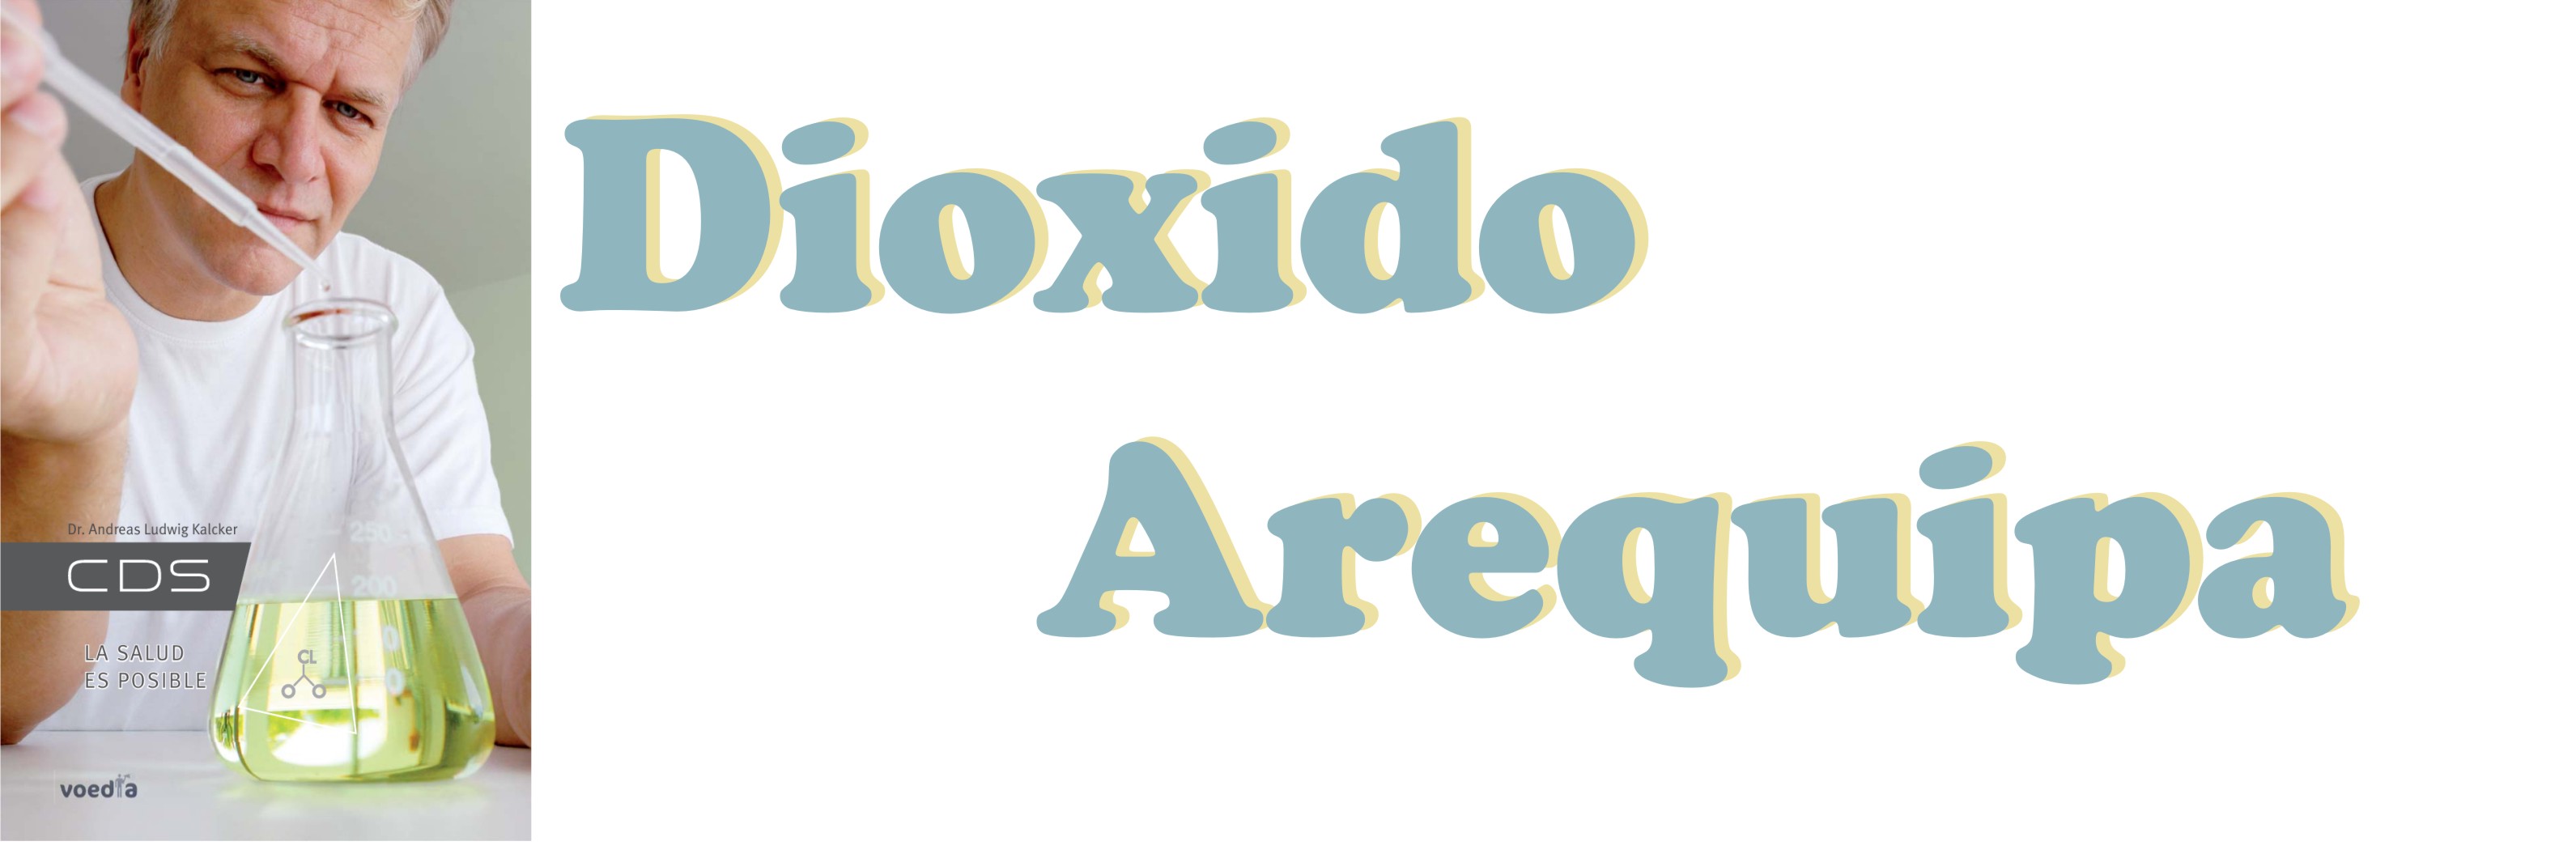 dioxido_en_arequipa